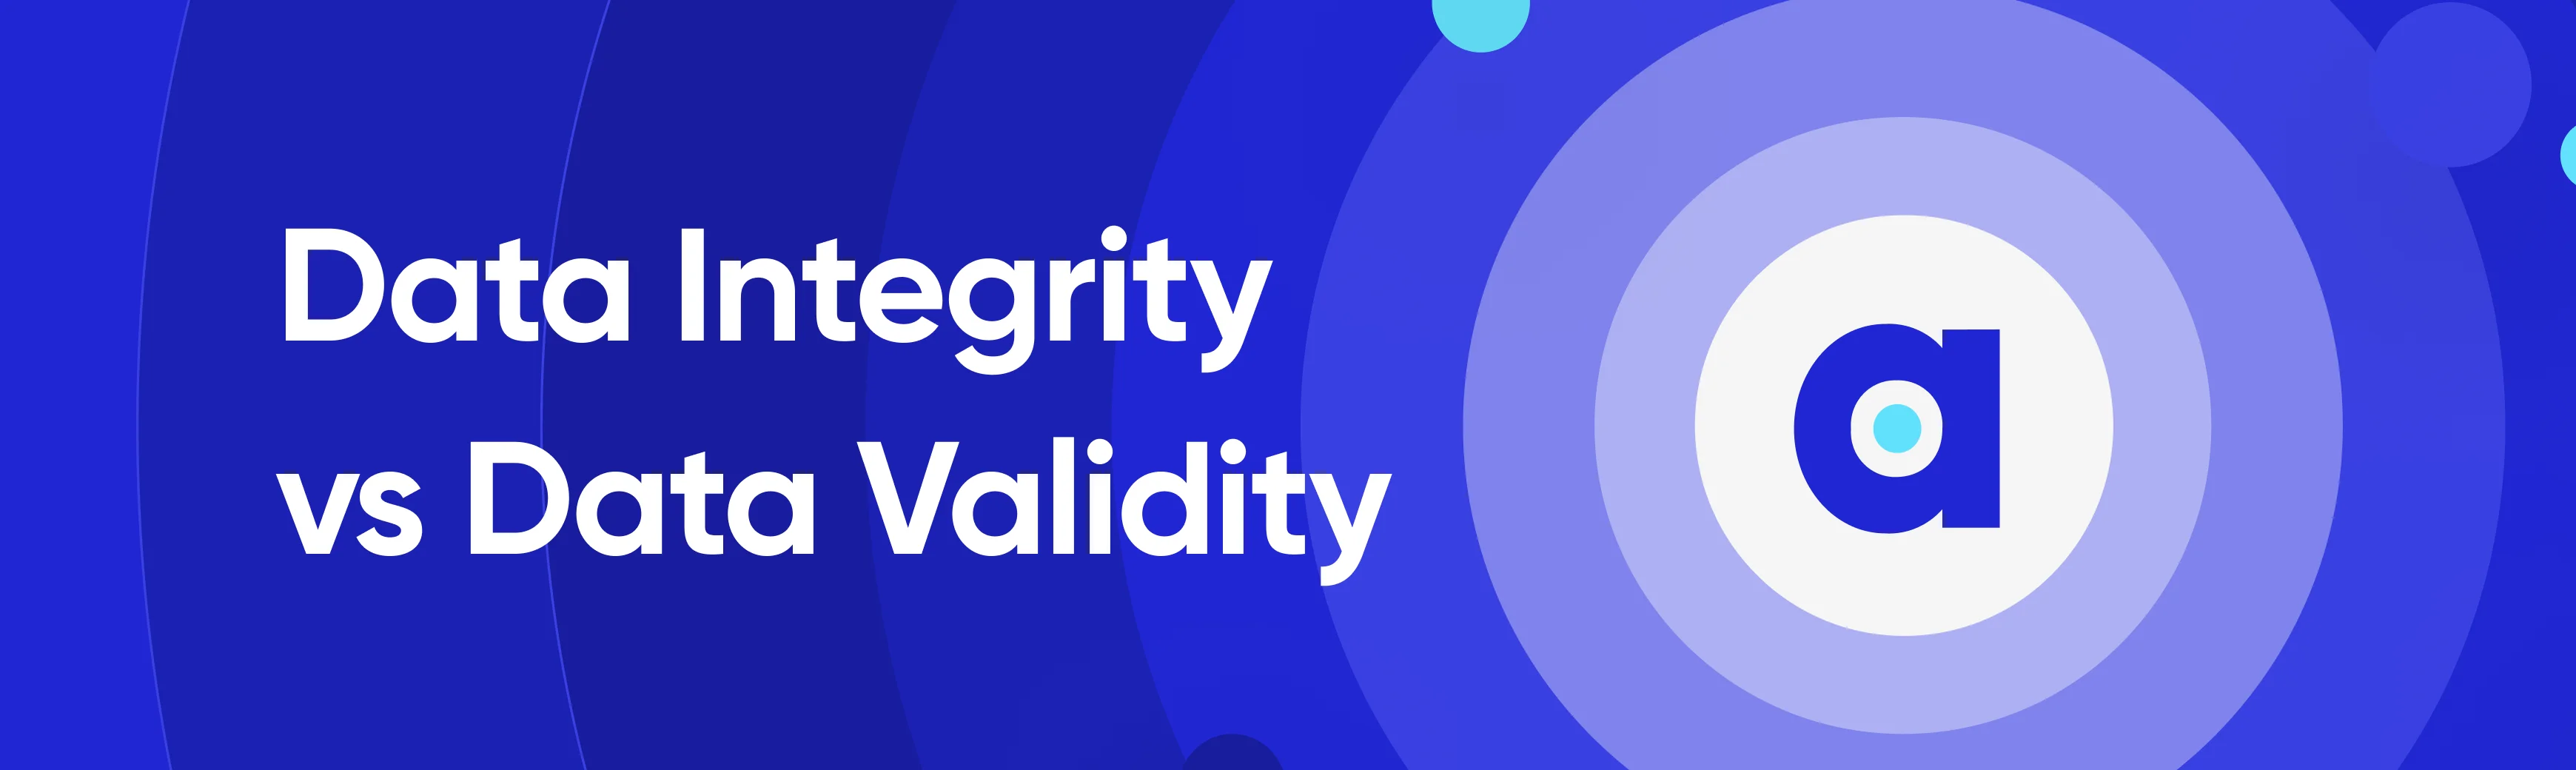 Data integrity vs data validity